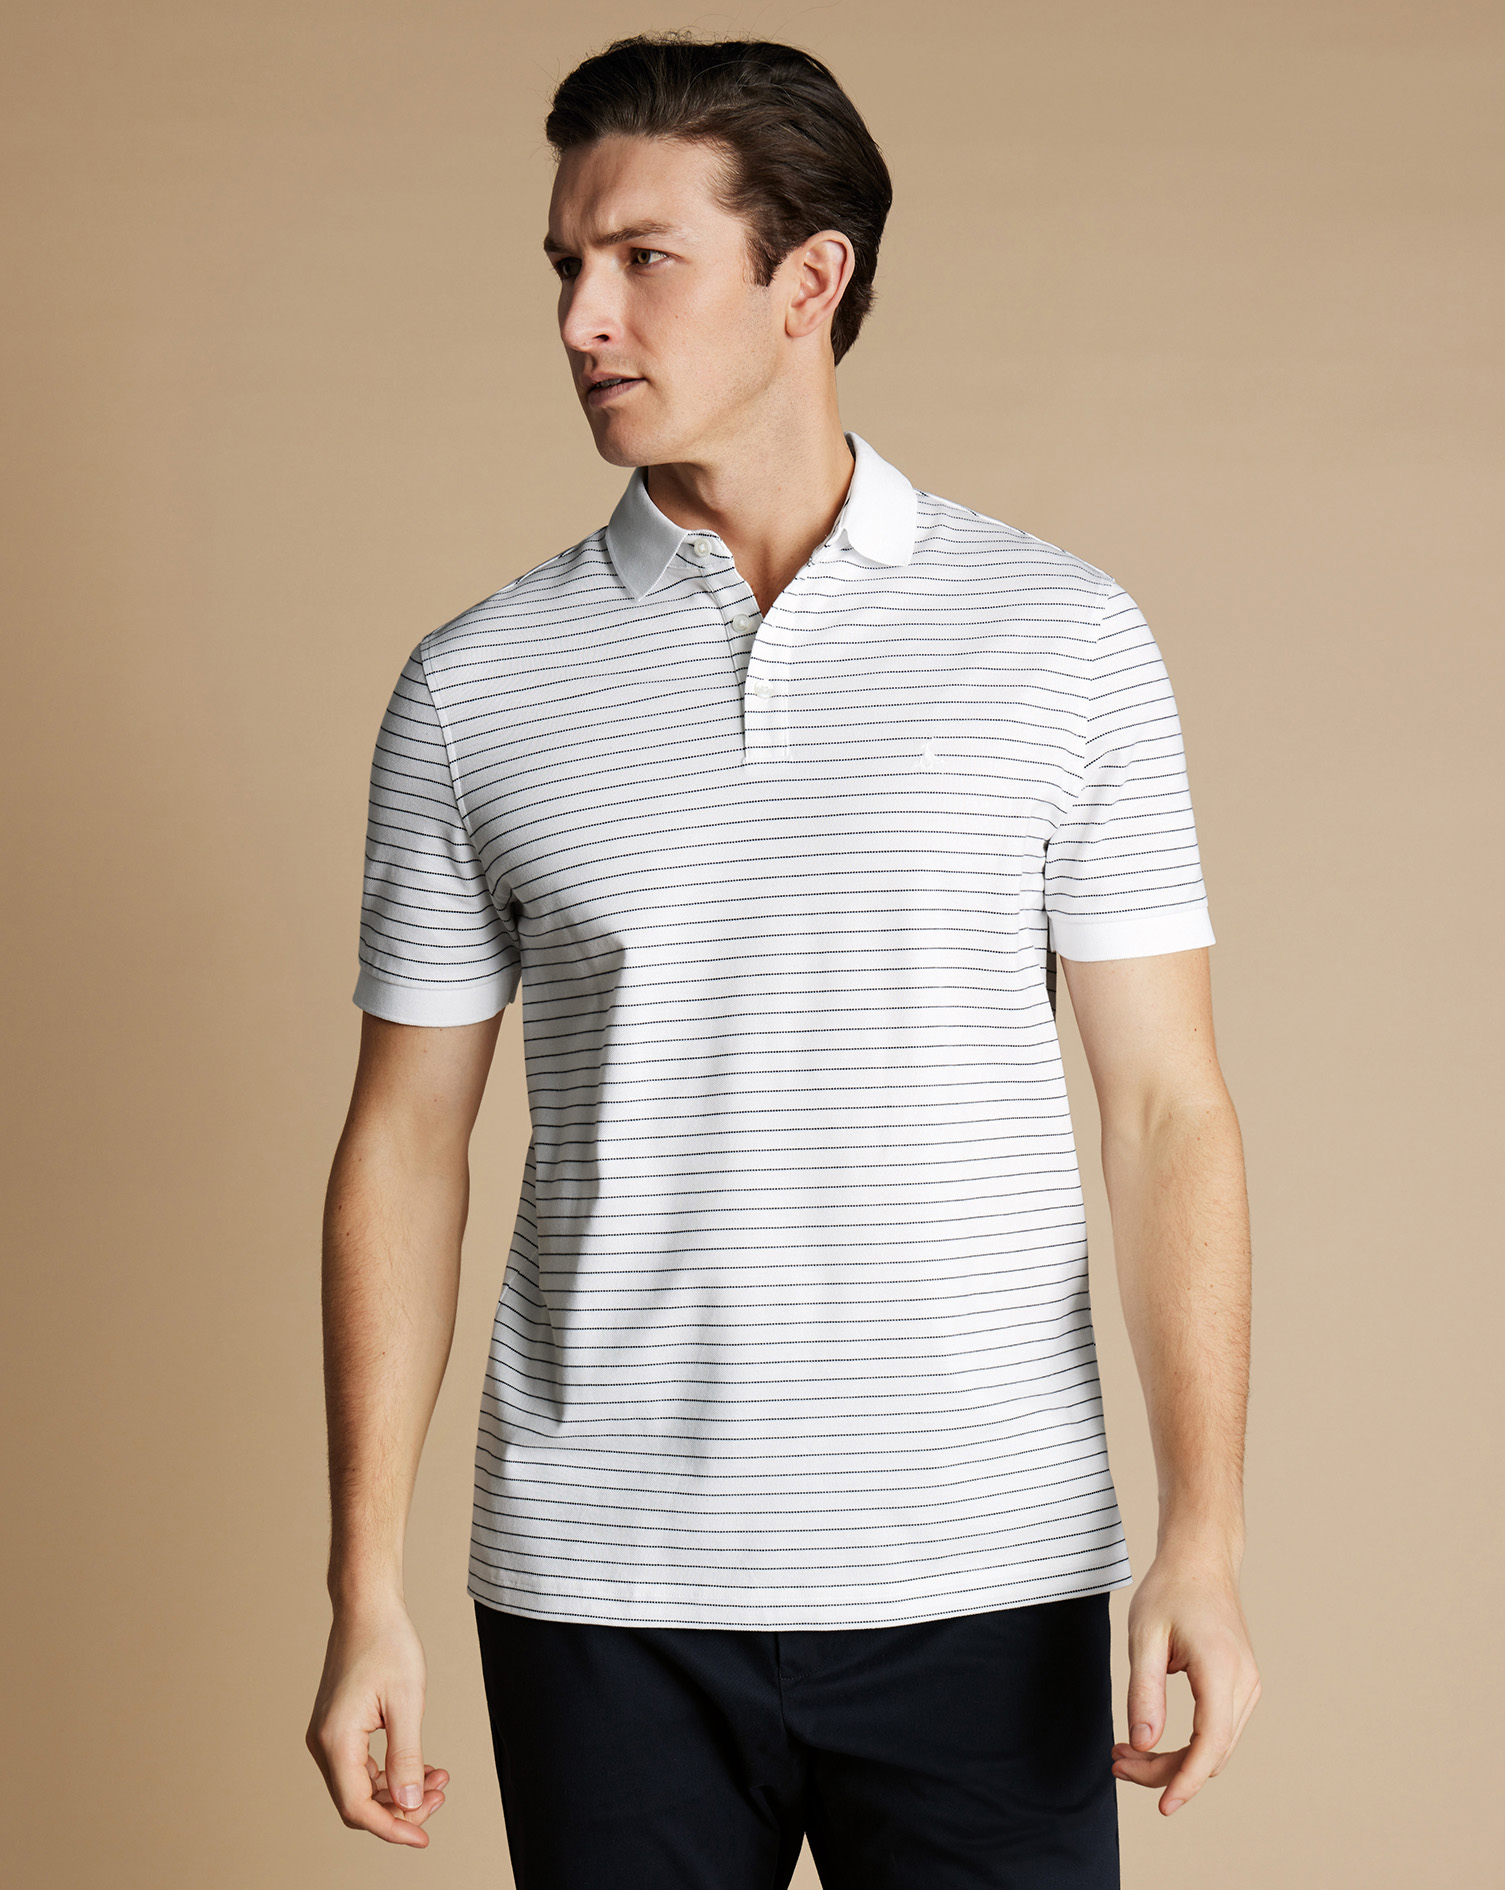 Men's Charles Tyrwhitt Pique Polo Shirt - White & Navy Size XXL Cotton
